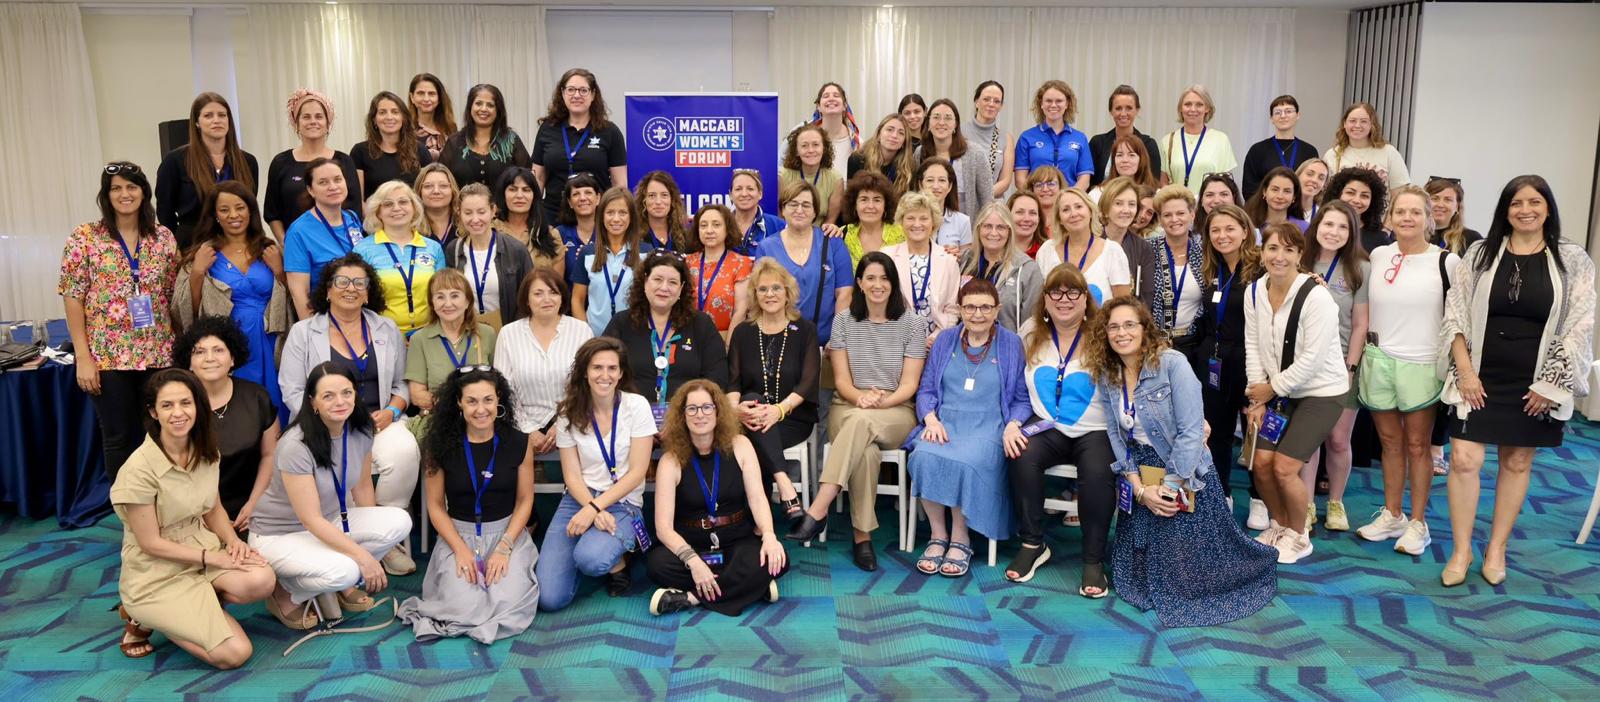 Il Maccabi Mondiale, una leadership femminile a congresso tra traguardi e progetti